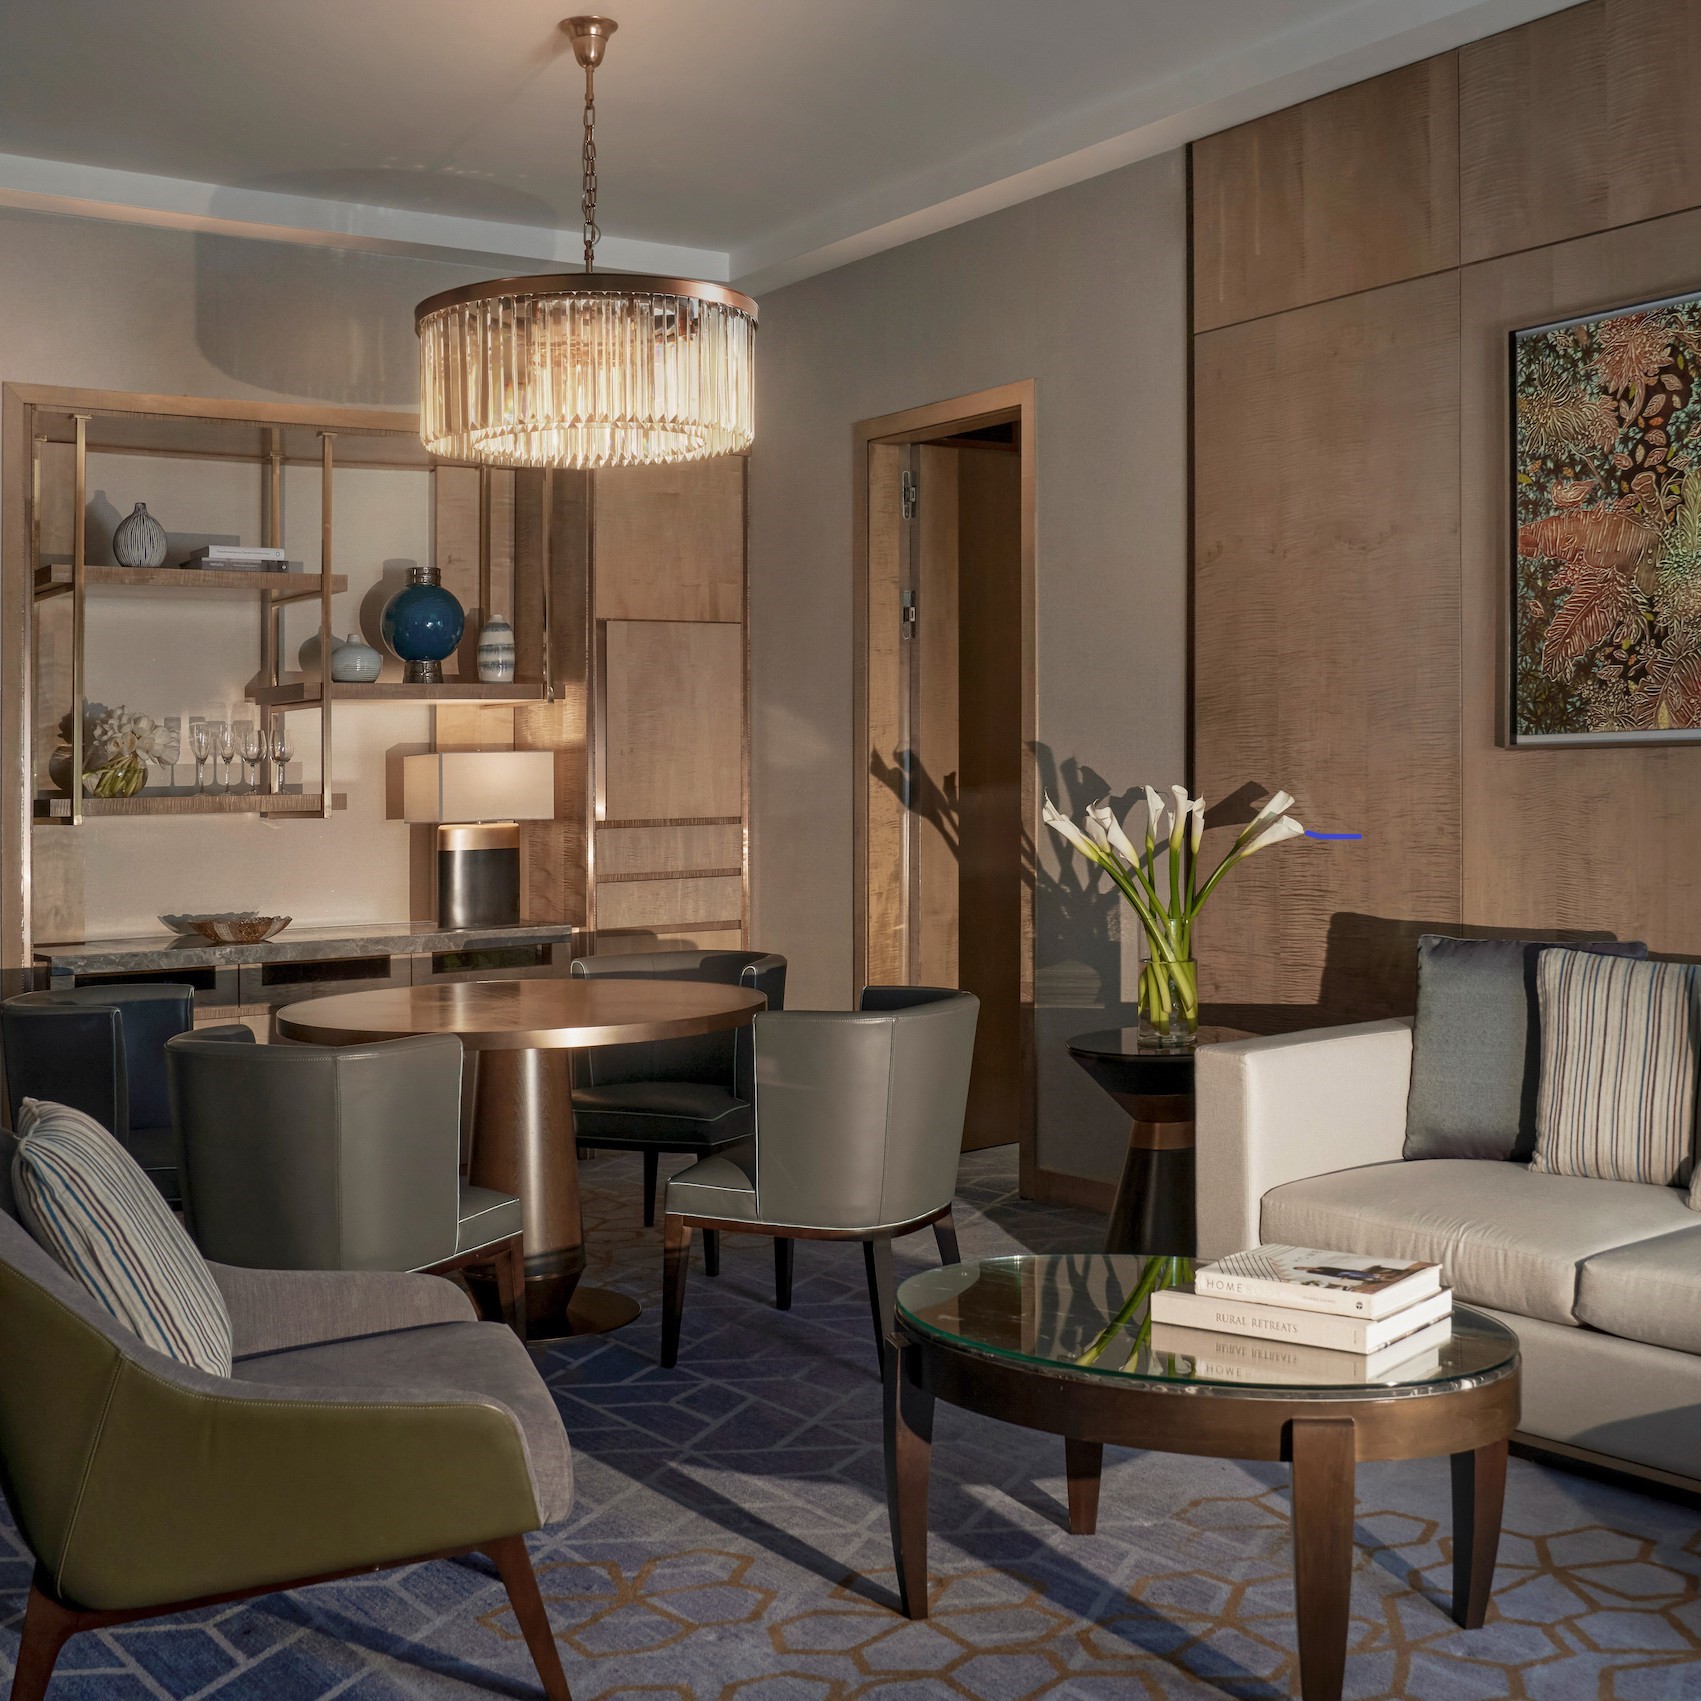 Phòng Royal Suite tại khách sạn 5 sao với tiện nghi sang trọng, đặc quyền Club InterContinental và tầm nhìn toàn cành thành phố Hà Nội